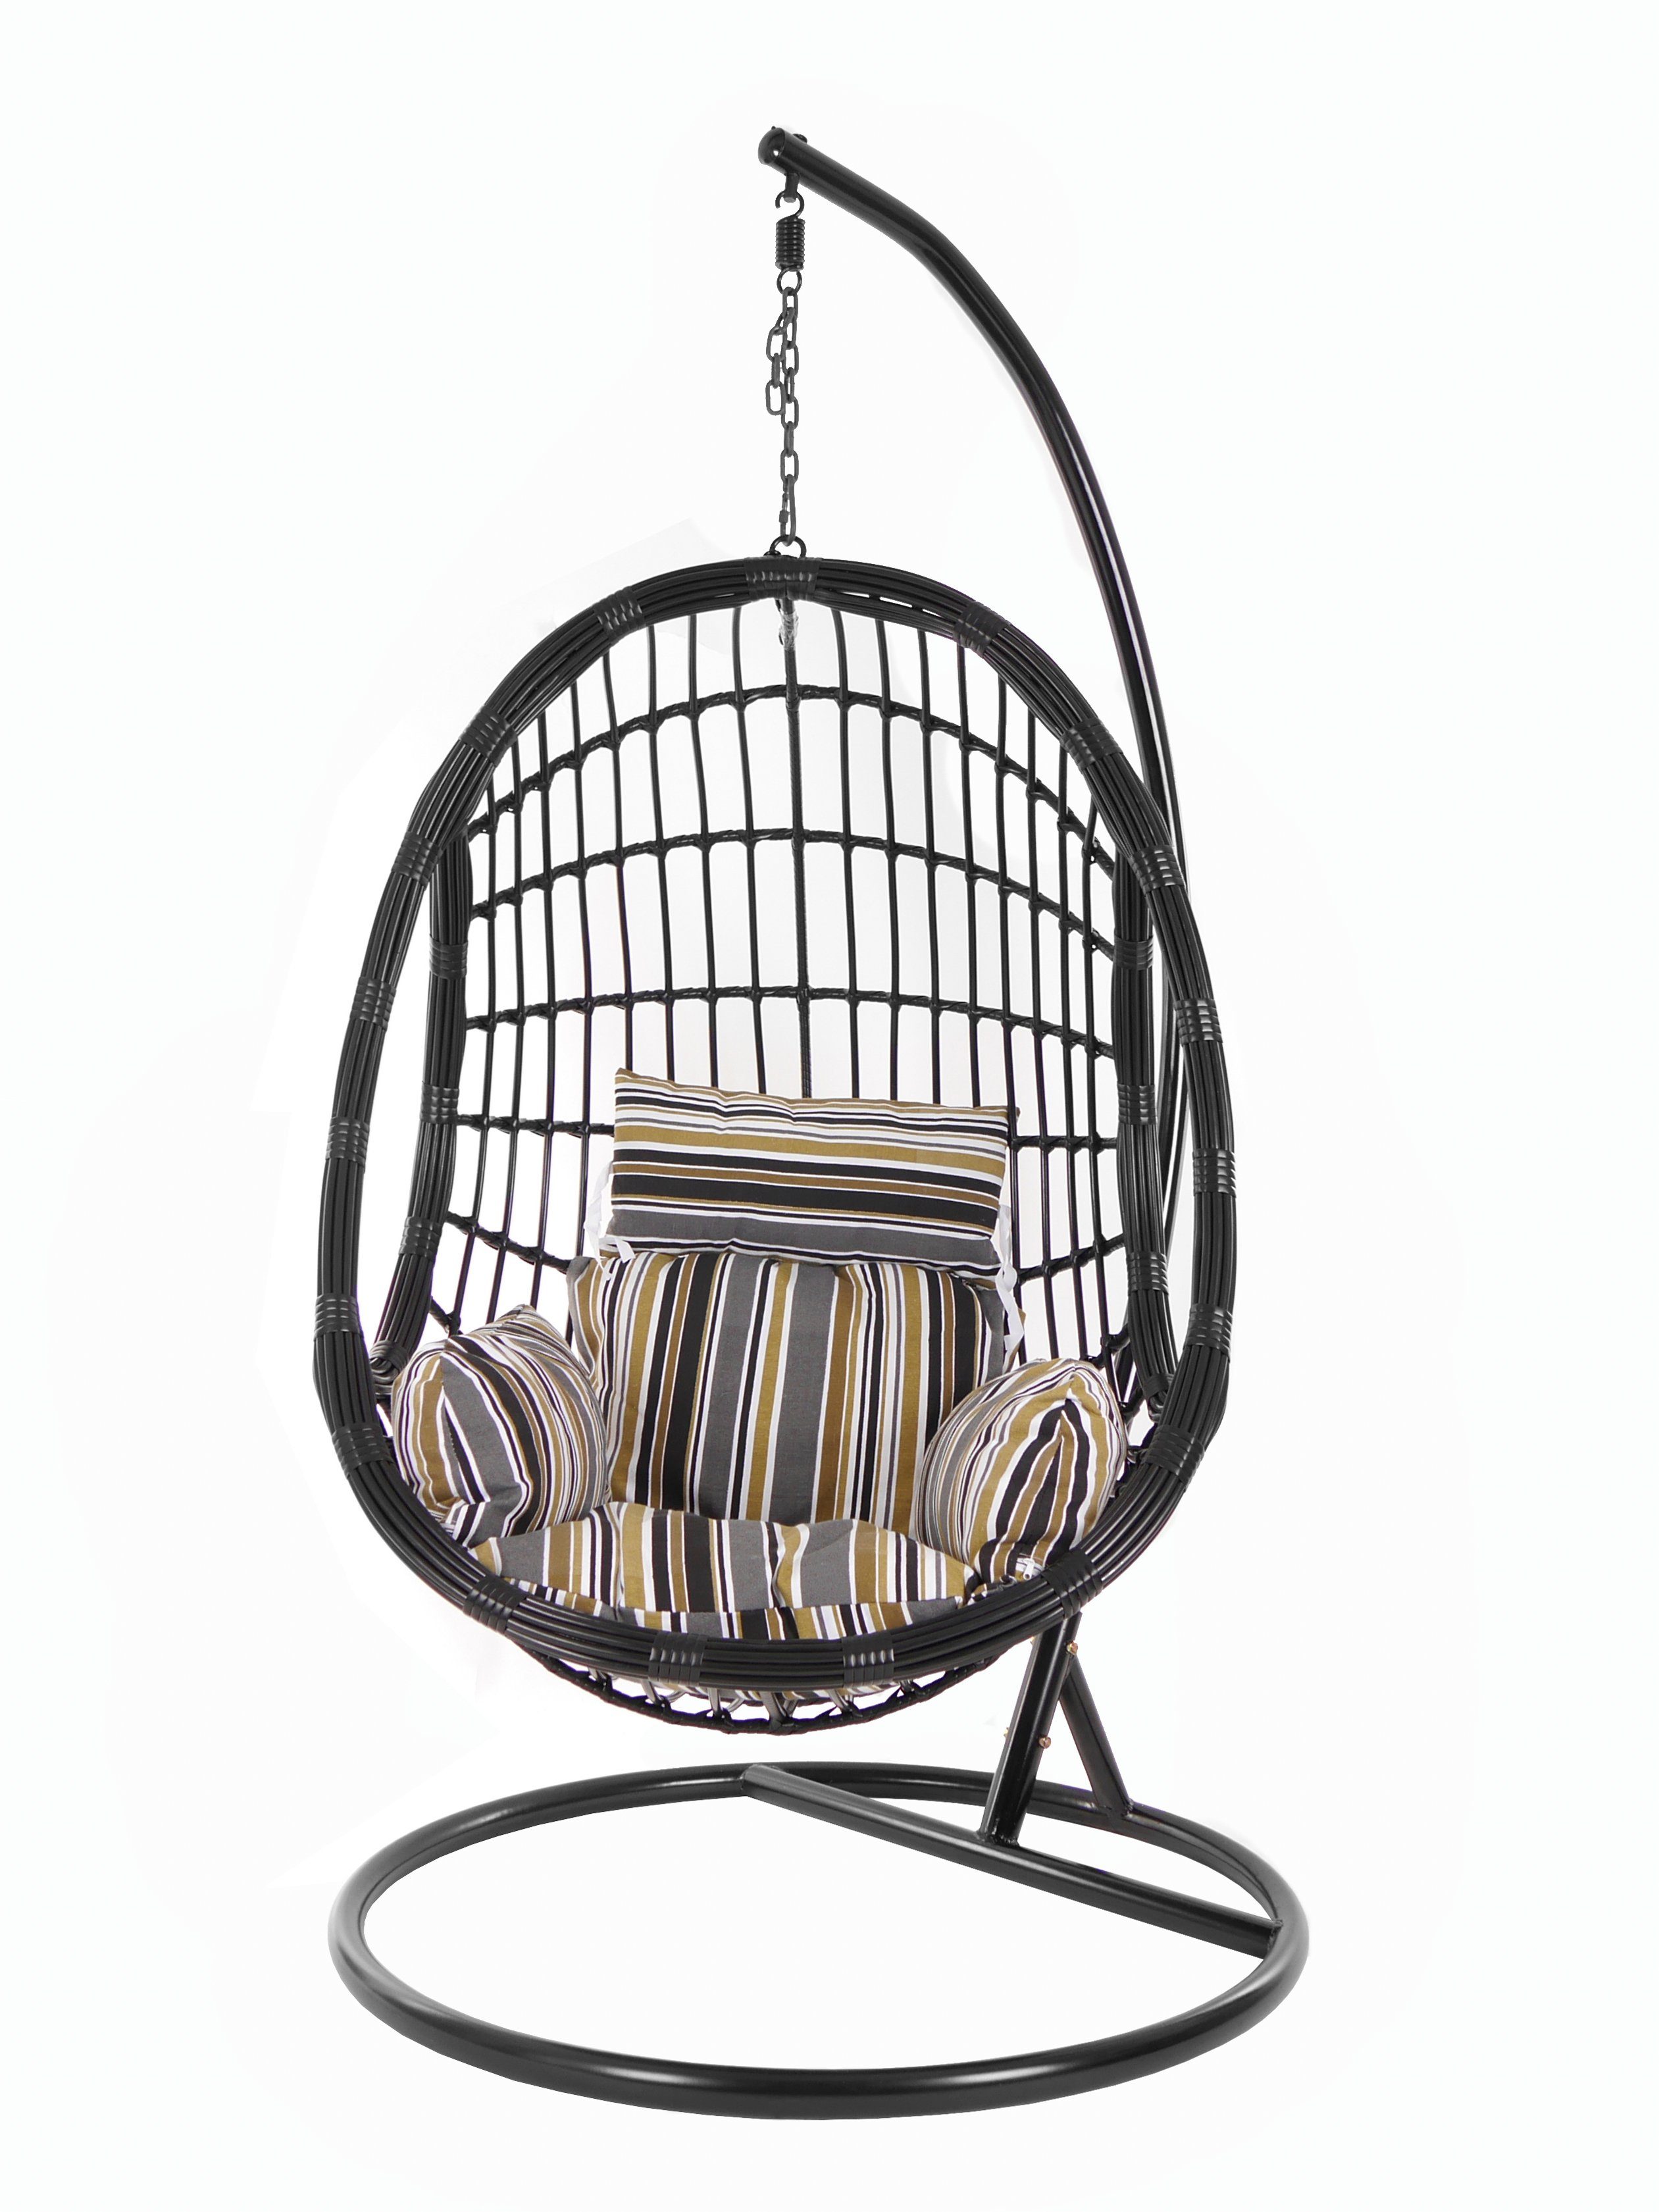 Chair, Gestell Hängesessel Loungemöbel, gestreift Schwebesessel, mit Schwarz, Muster terra) PALMANOVA black, Swing KIDEO Kissen, und Hängesessel natur (7891